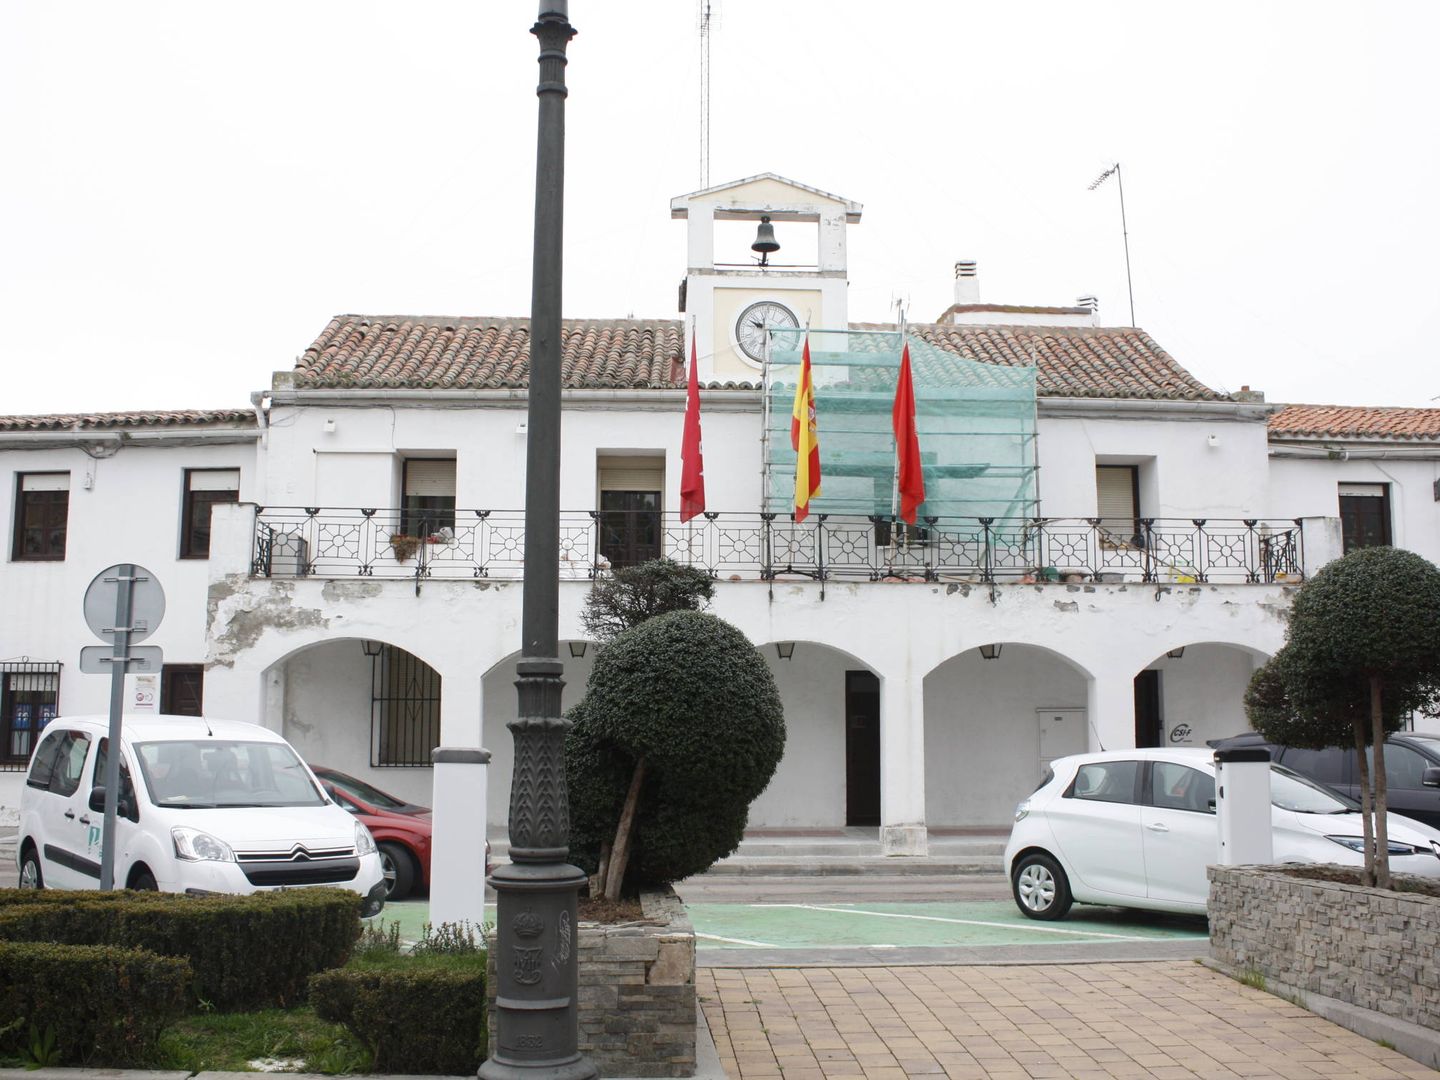 El antigo Ayuntamiento de Parla. (Foto: Héctor G. Barnés)